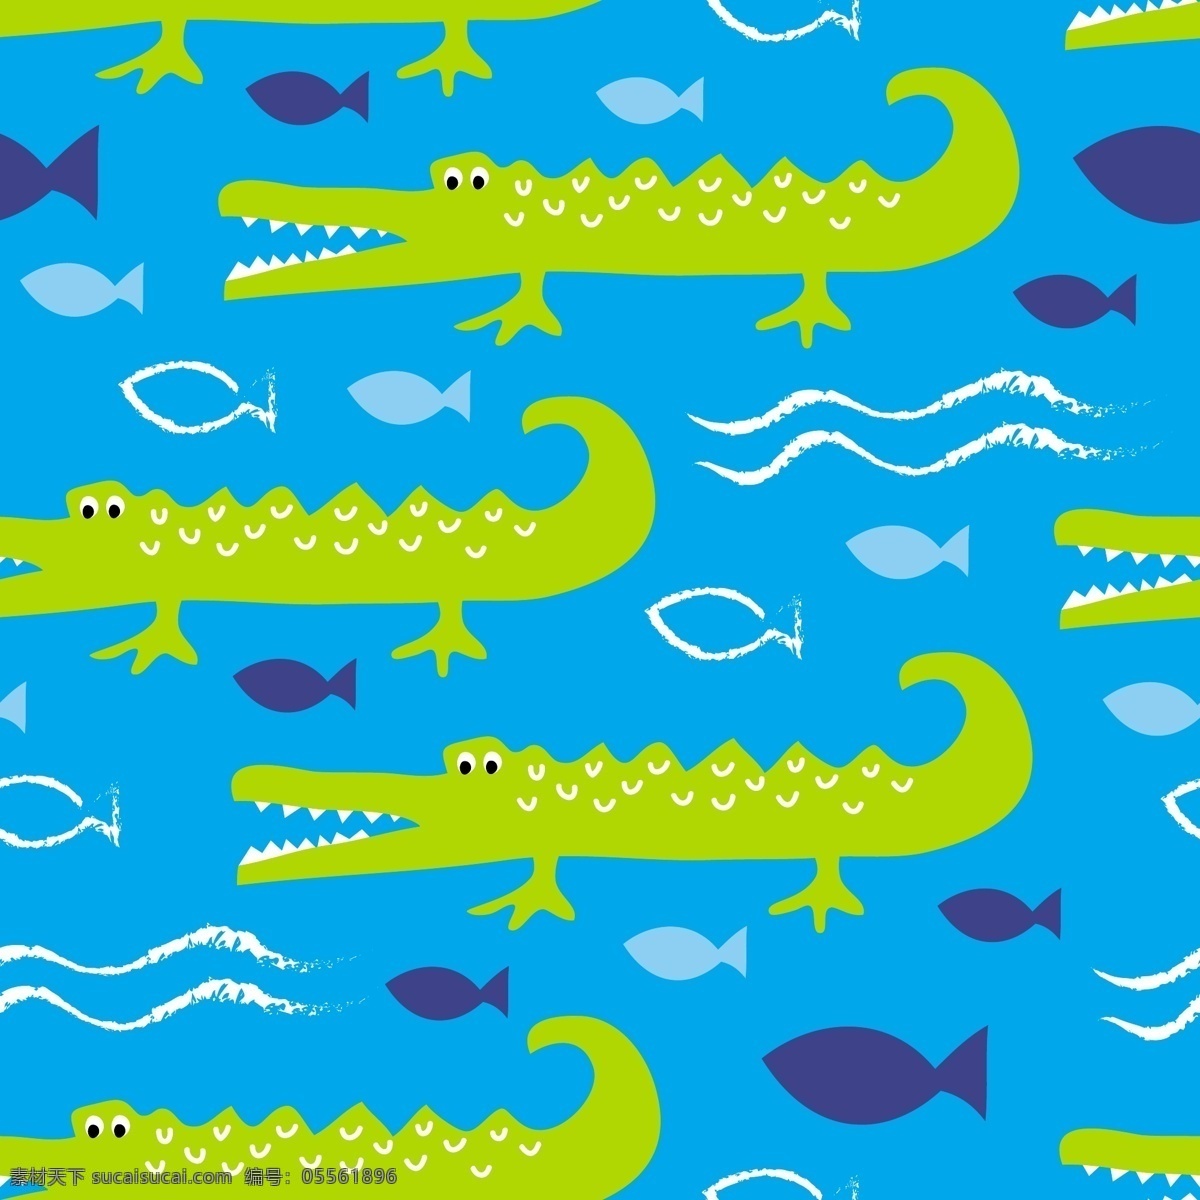 蓝色 海洋 花纹 背景 图 矢量背景图 卡通矢量素材 卡通背景 波浪 模板下载 创意背景图 素材免费下载 卡通漫画 模版 海洋鳄鱼 无缝背景图